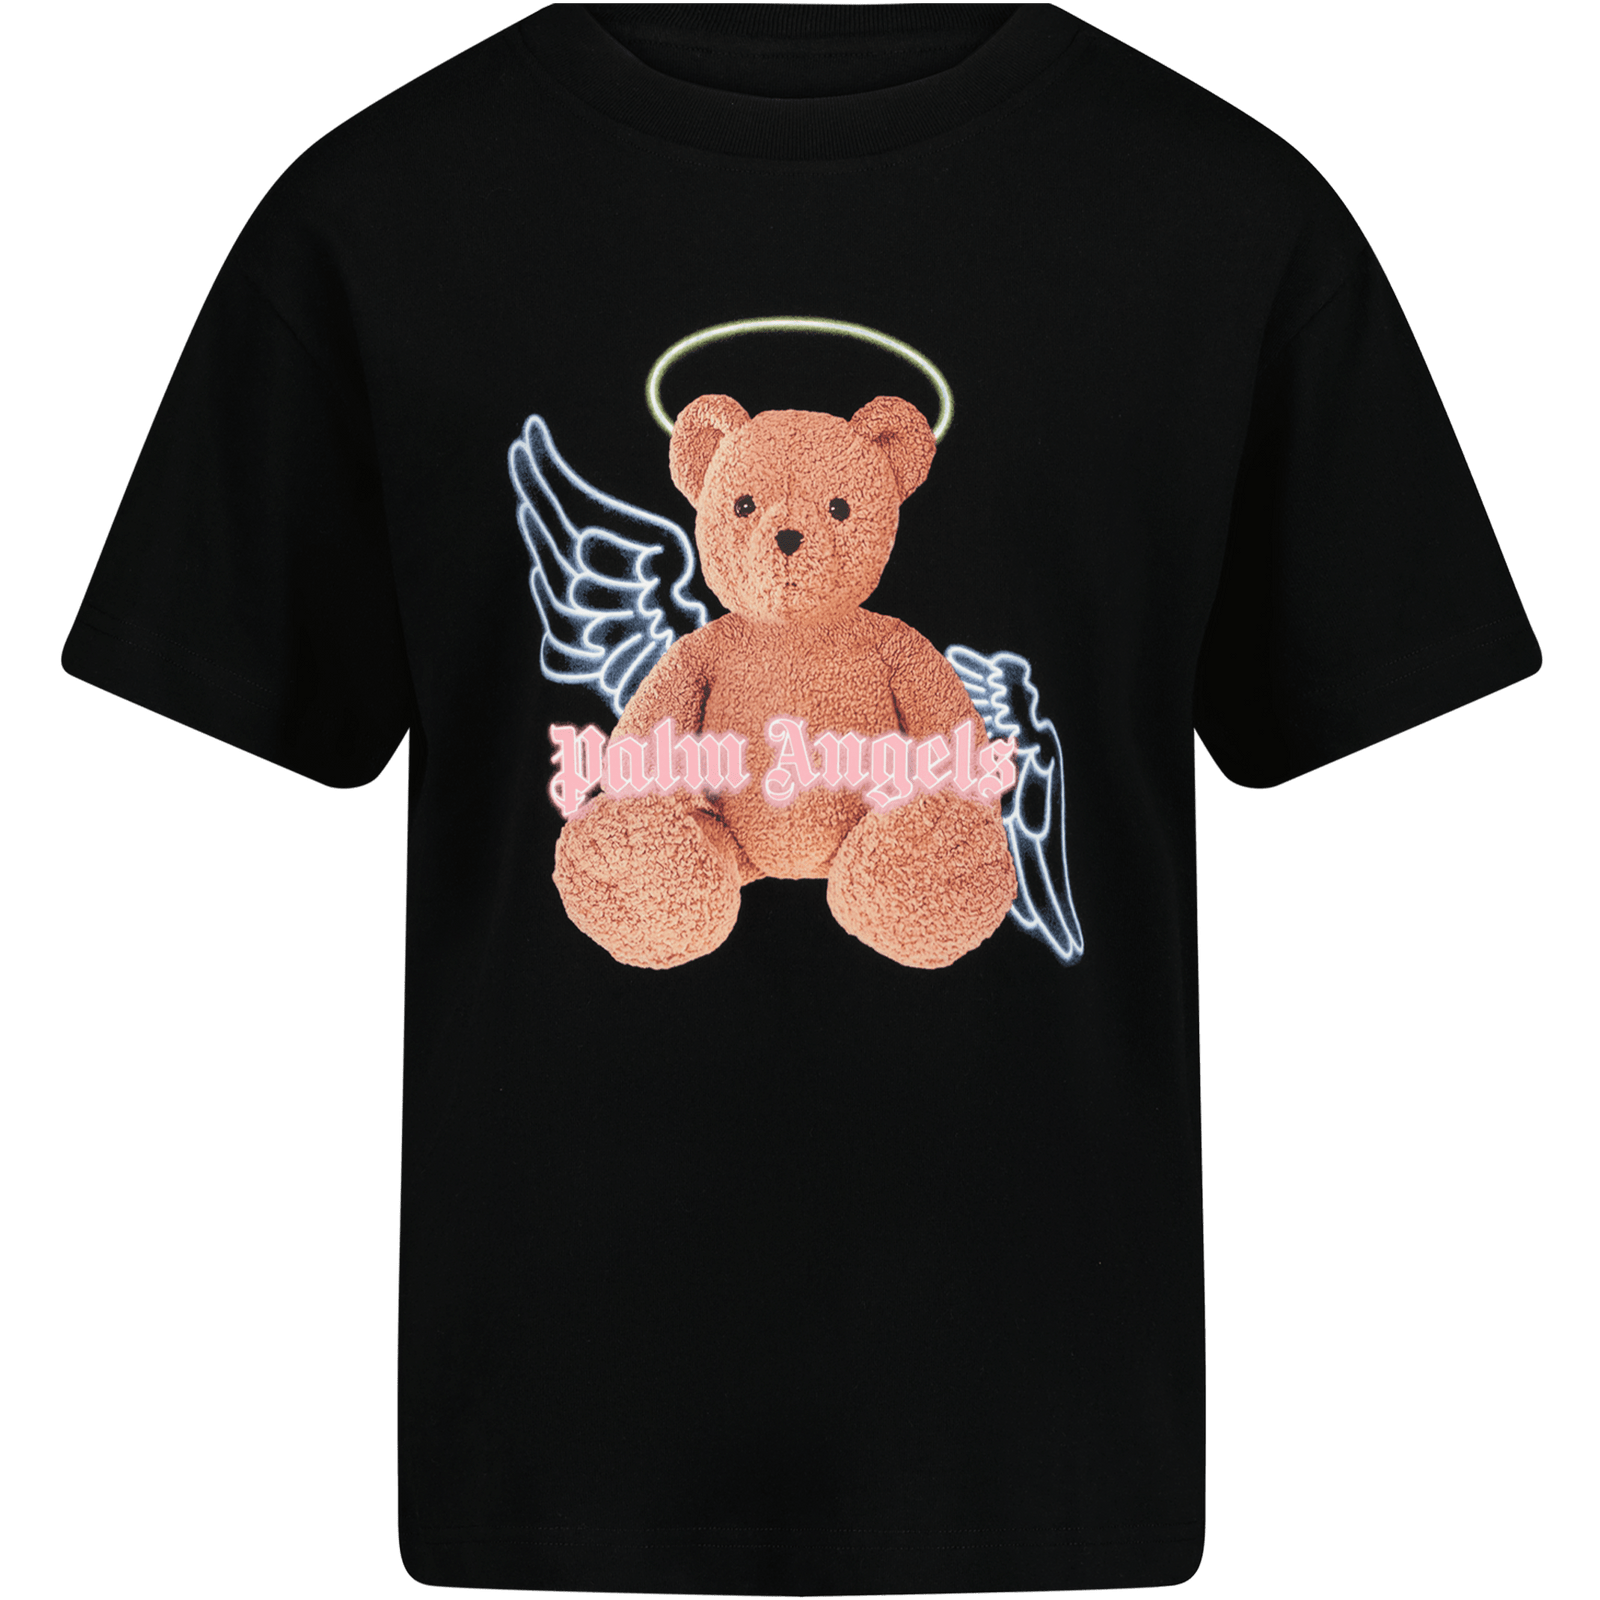 Palm Angels Kinder Meisjes T-Shirt Zwart 4Y